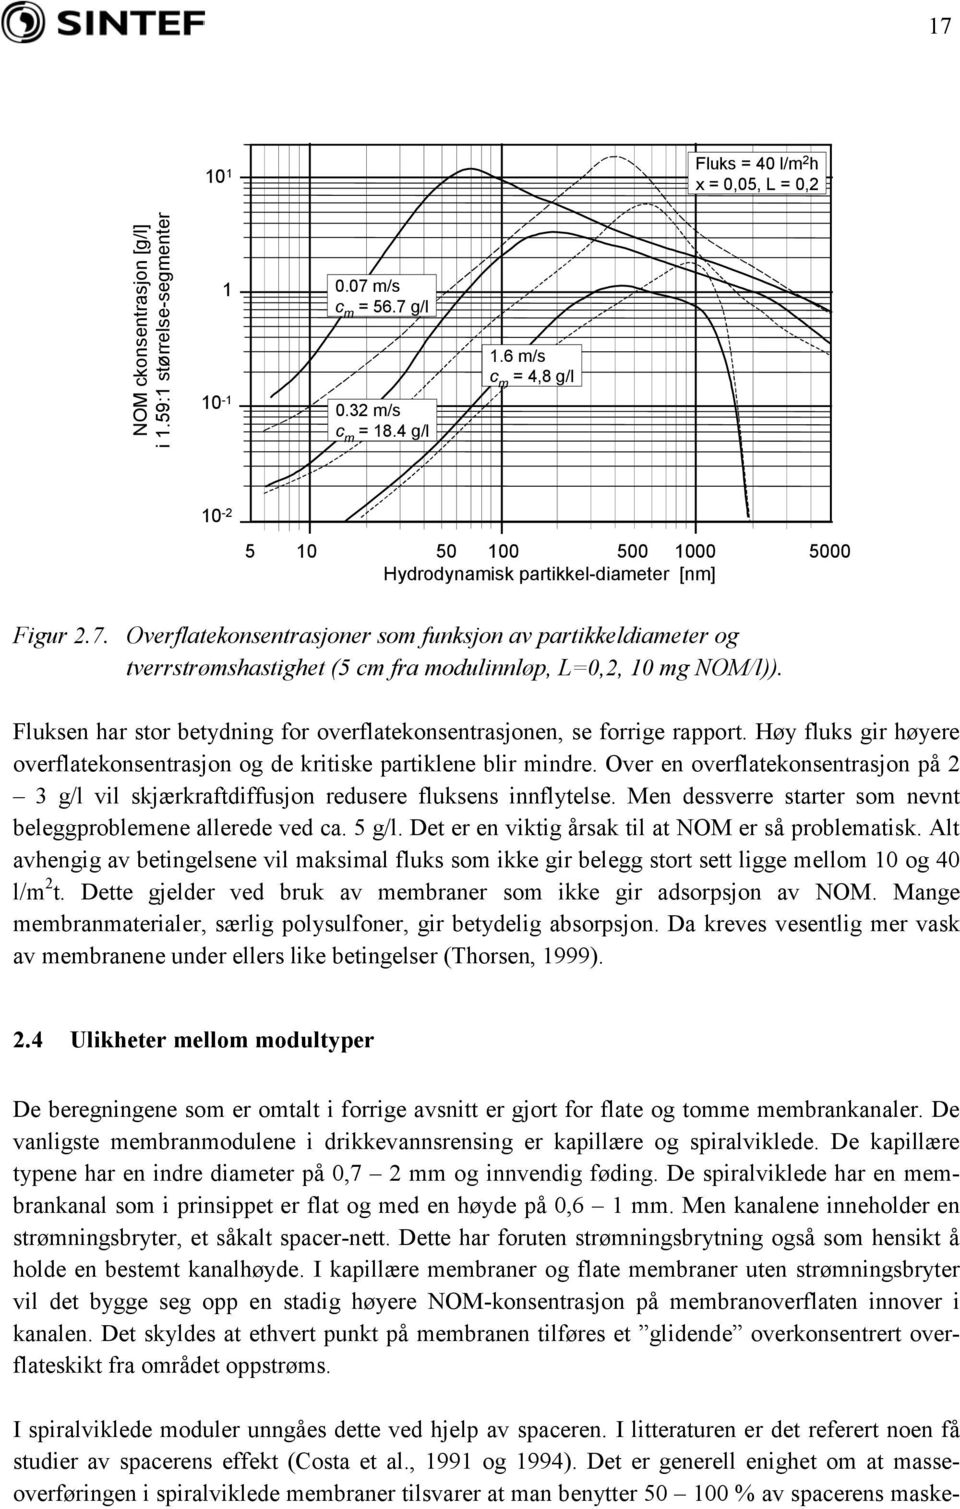 Overflatekonsentrasjoner som funksjon av partikkeldiameter og tverrstrømshastighet (5 cm fra modulinnløp, L=0,2, 10 mg NOM/l)).